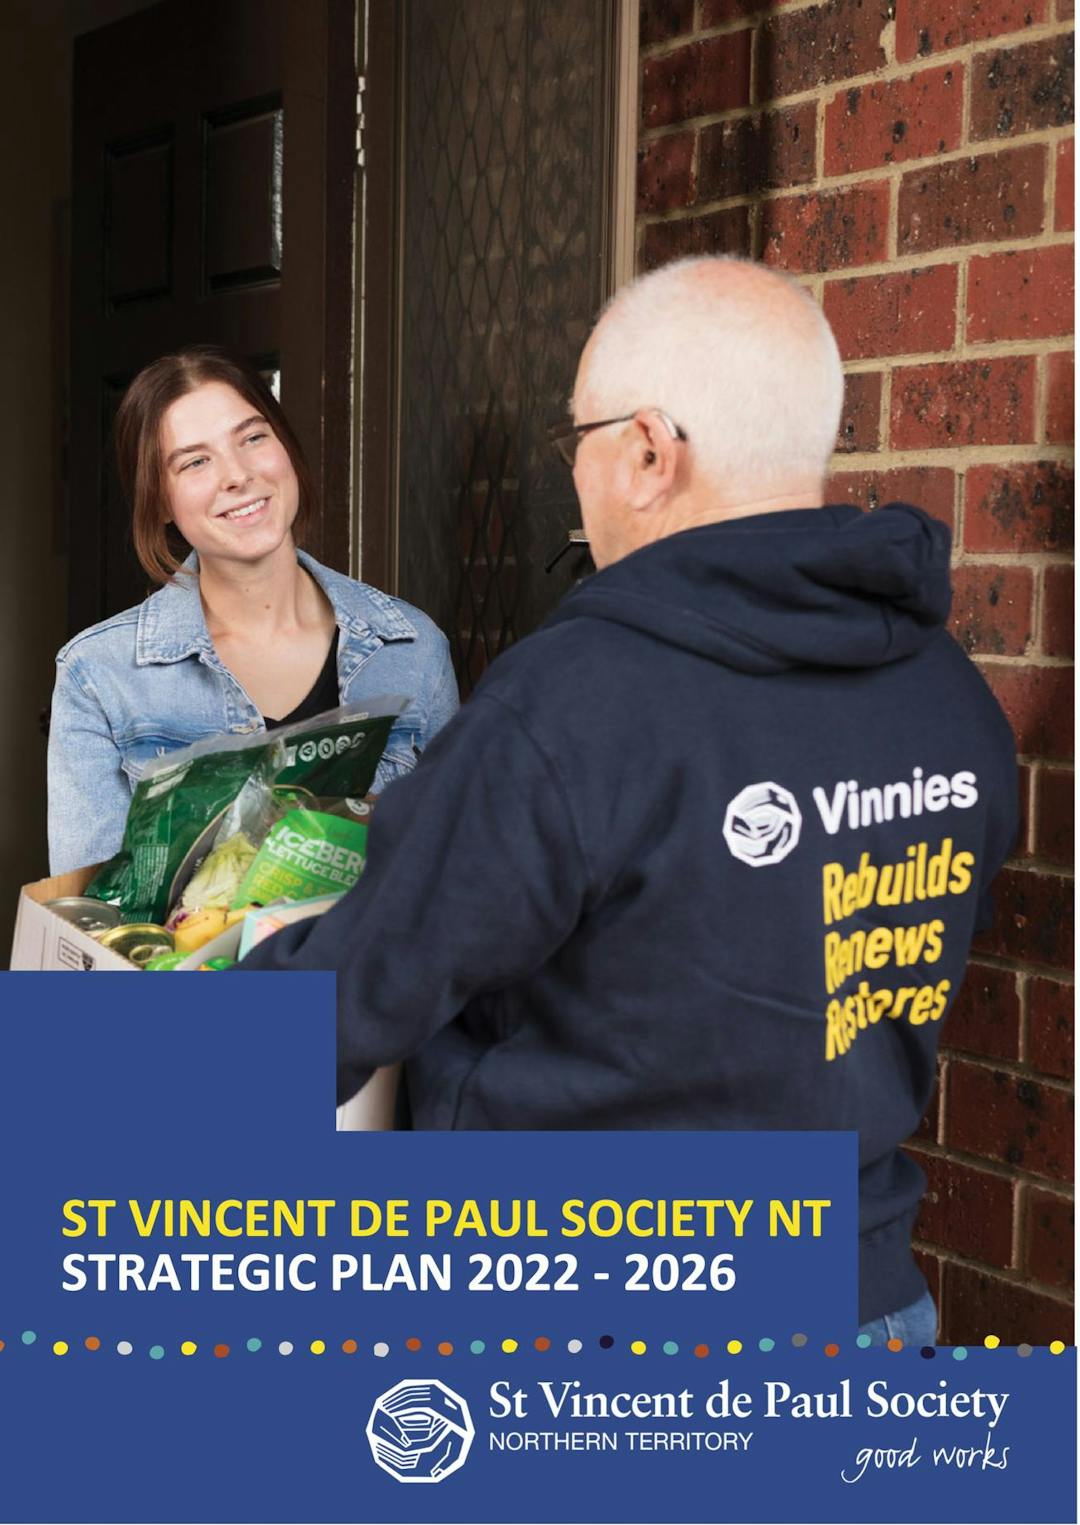 St Vincent de Paul Society NT Strategic Plan 2022-2026